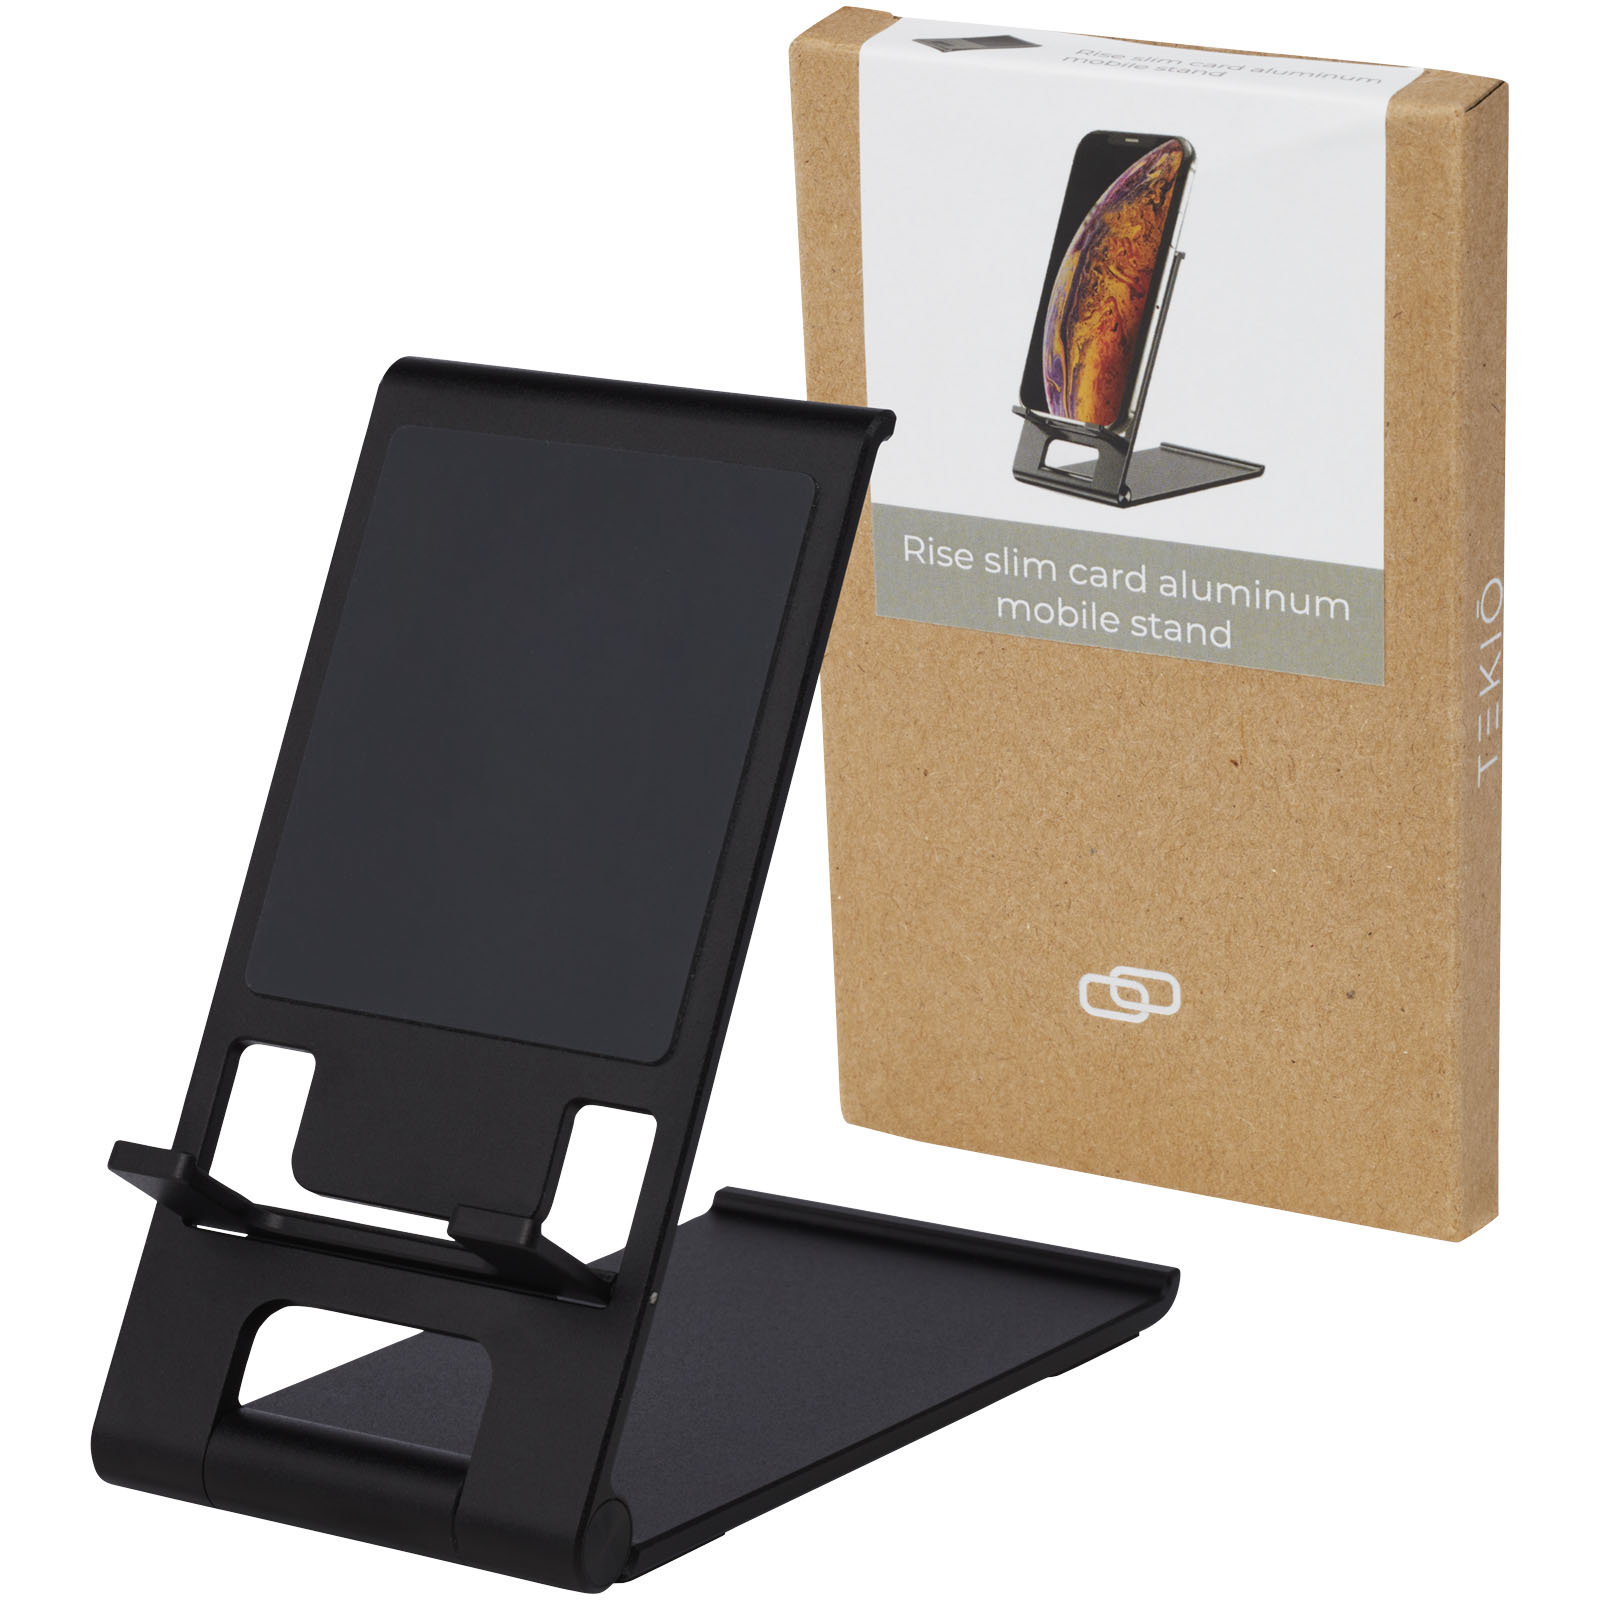 Advertising Telephone & Tablet Accessories - Rise slim aluminium phone stand - 5